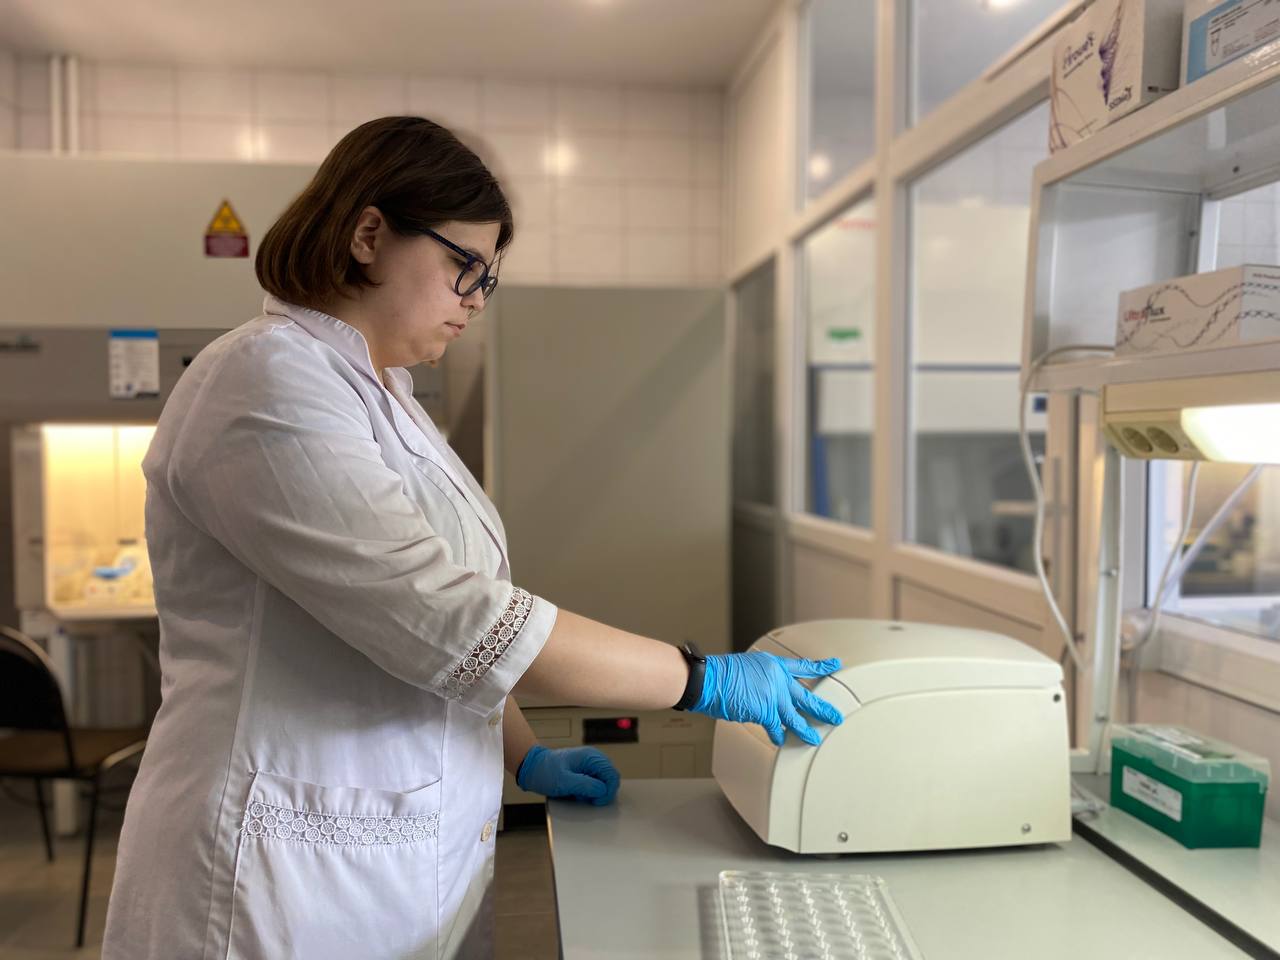 В новой лаборатории межвузовского кампуса ученые ГАУ Северного Зауралья будут трудиться над обеспечением безопасности продуктов